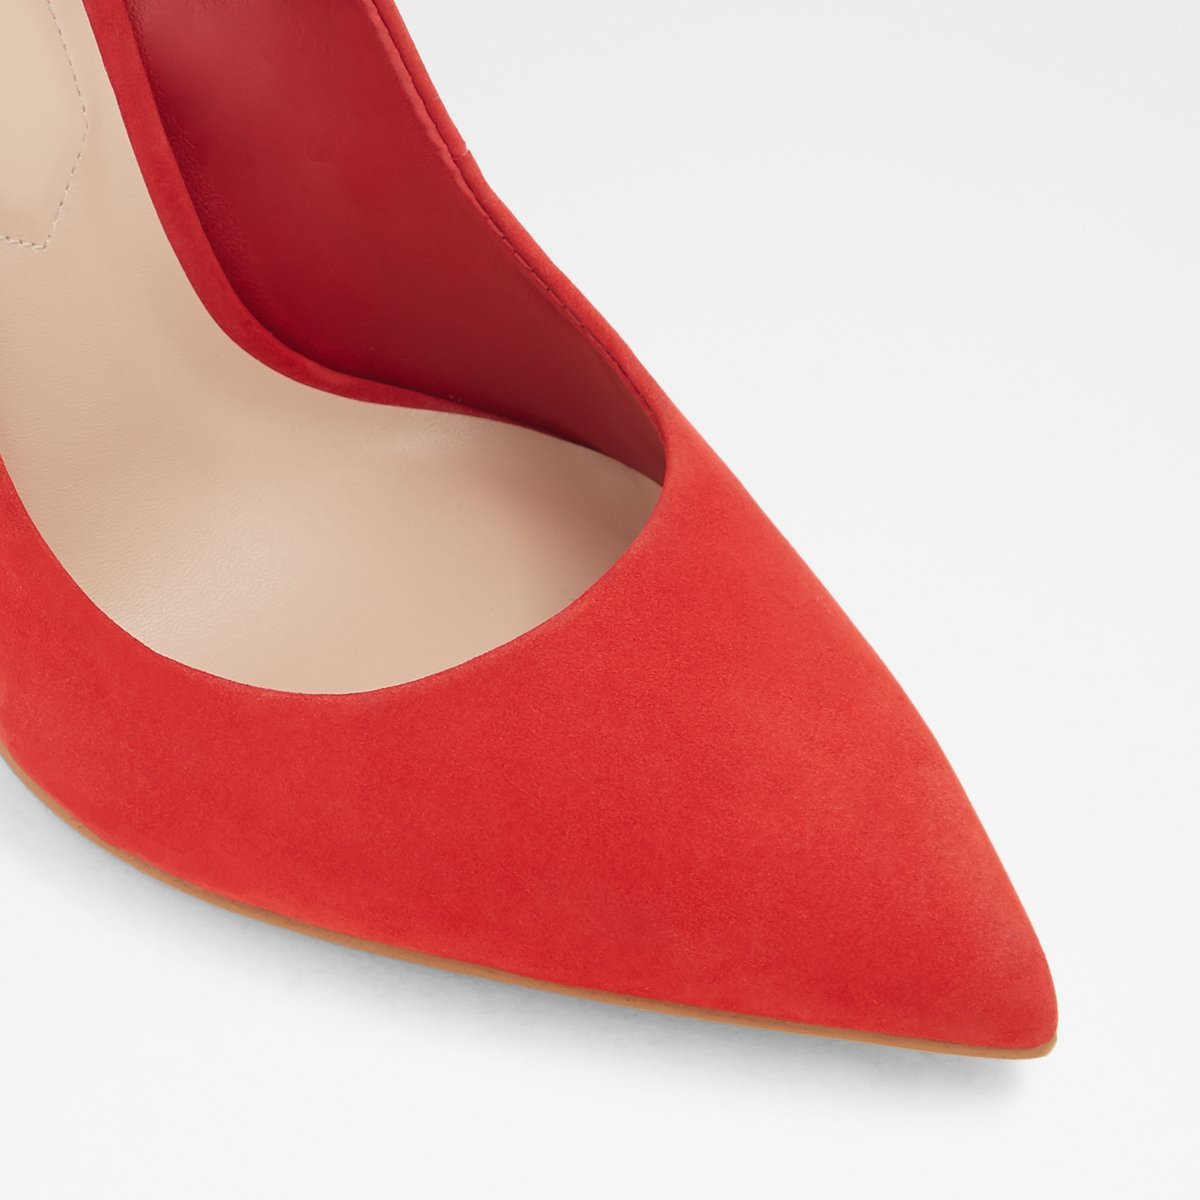 aldo shoes red heels